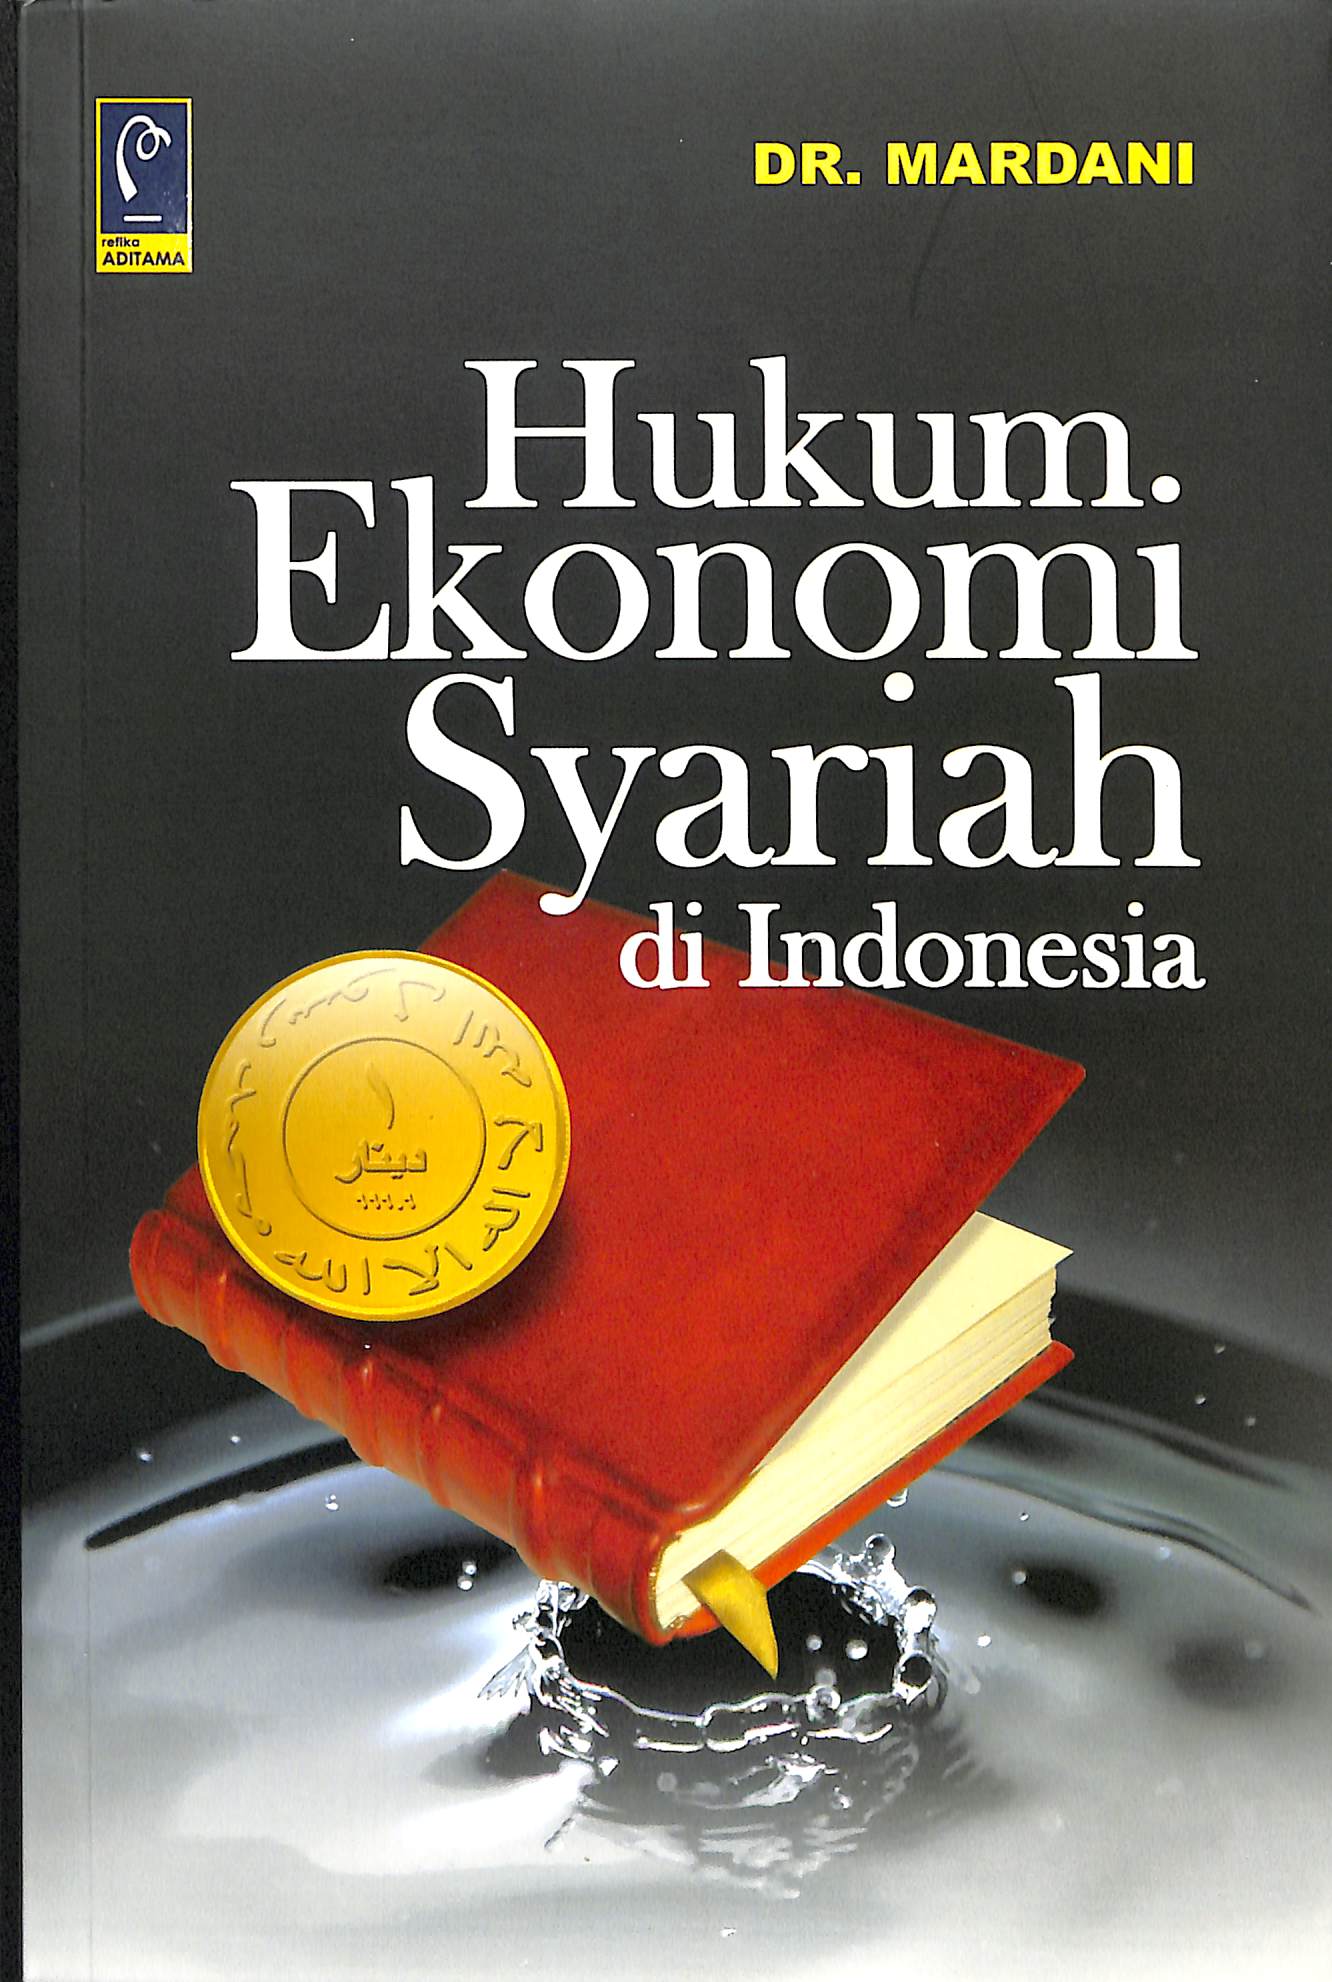 HUKUM EKONOMI SYARIAH DI INDONESIA